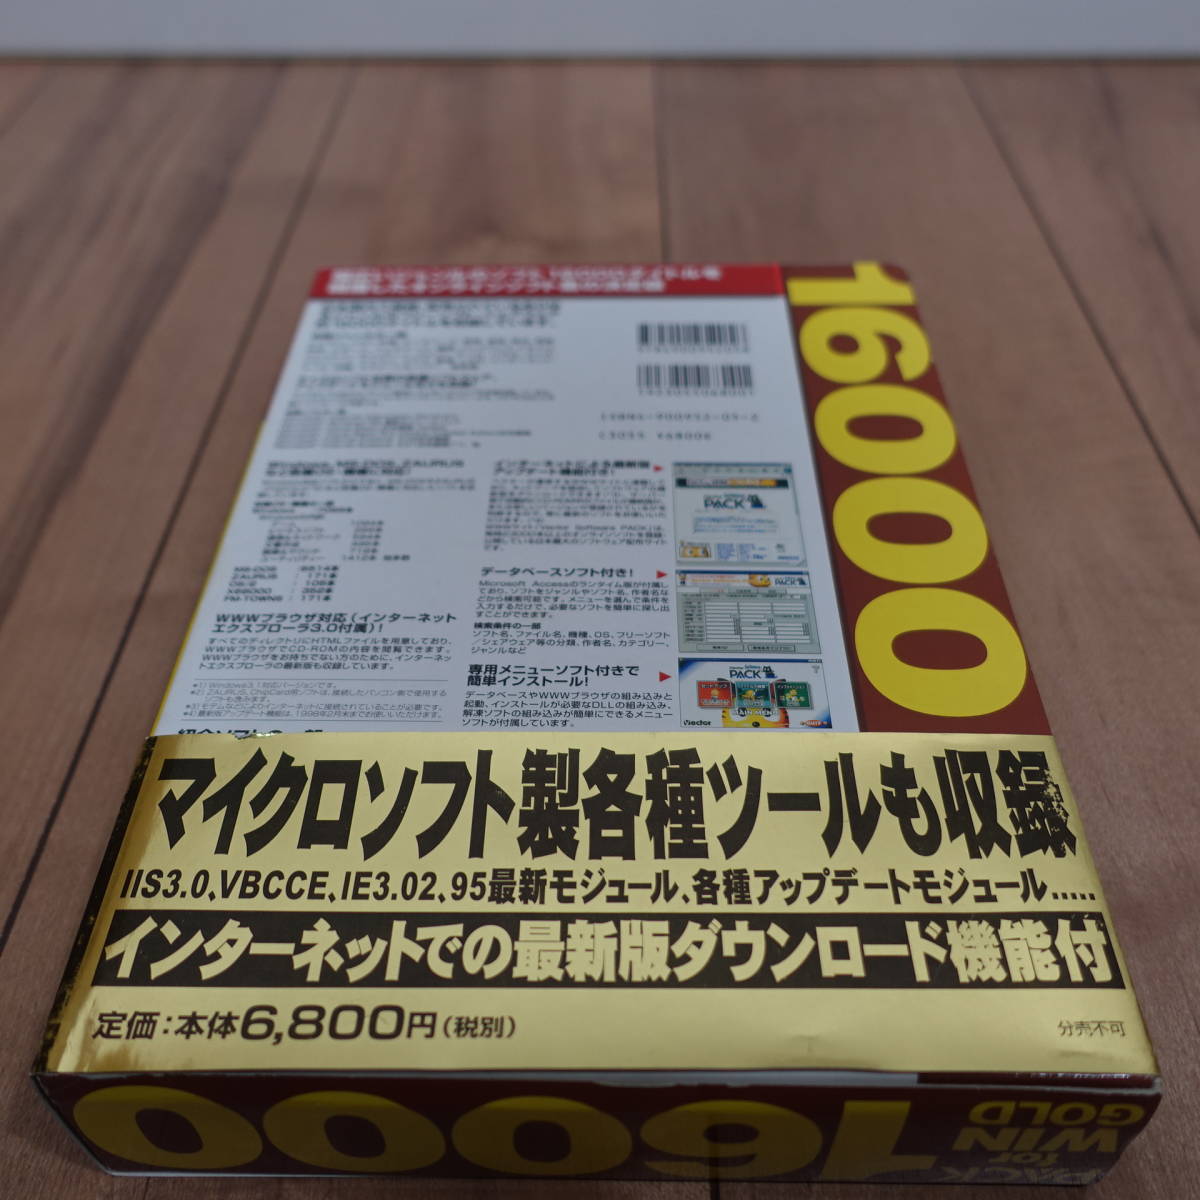 PACK for WIN GOLD 16000 CD8枚組 定番フリーソフト&シェアウェア集_画像5